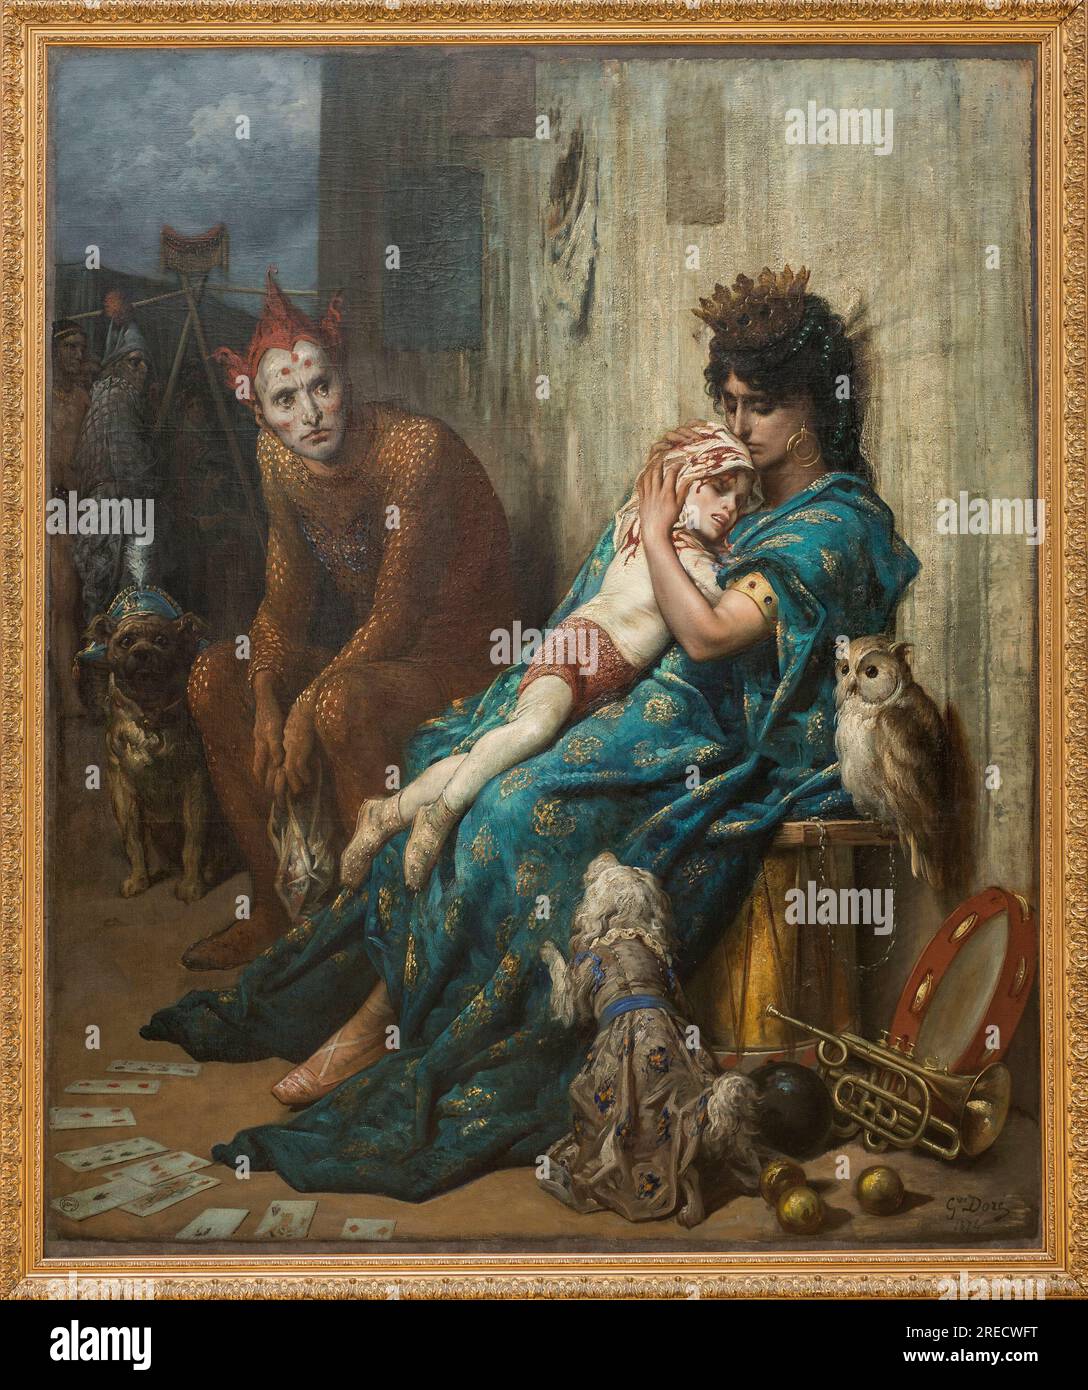 Acrobats - Les saltimbanques' (l'enfant blesse) - Peinture de Gustave Dore (1832-1883), 1874 - Clermont Ferrand (Clermont-Ferrand), musee d'art Roger Quilliot Stock Photo